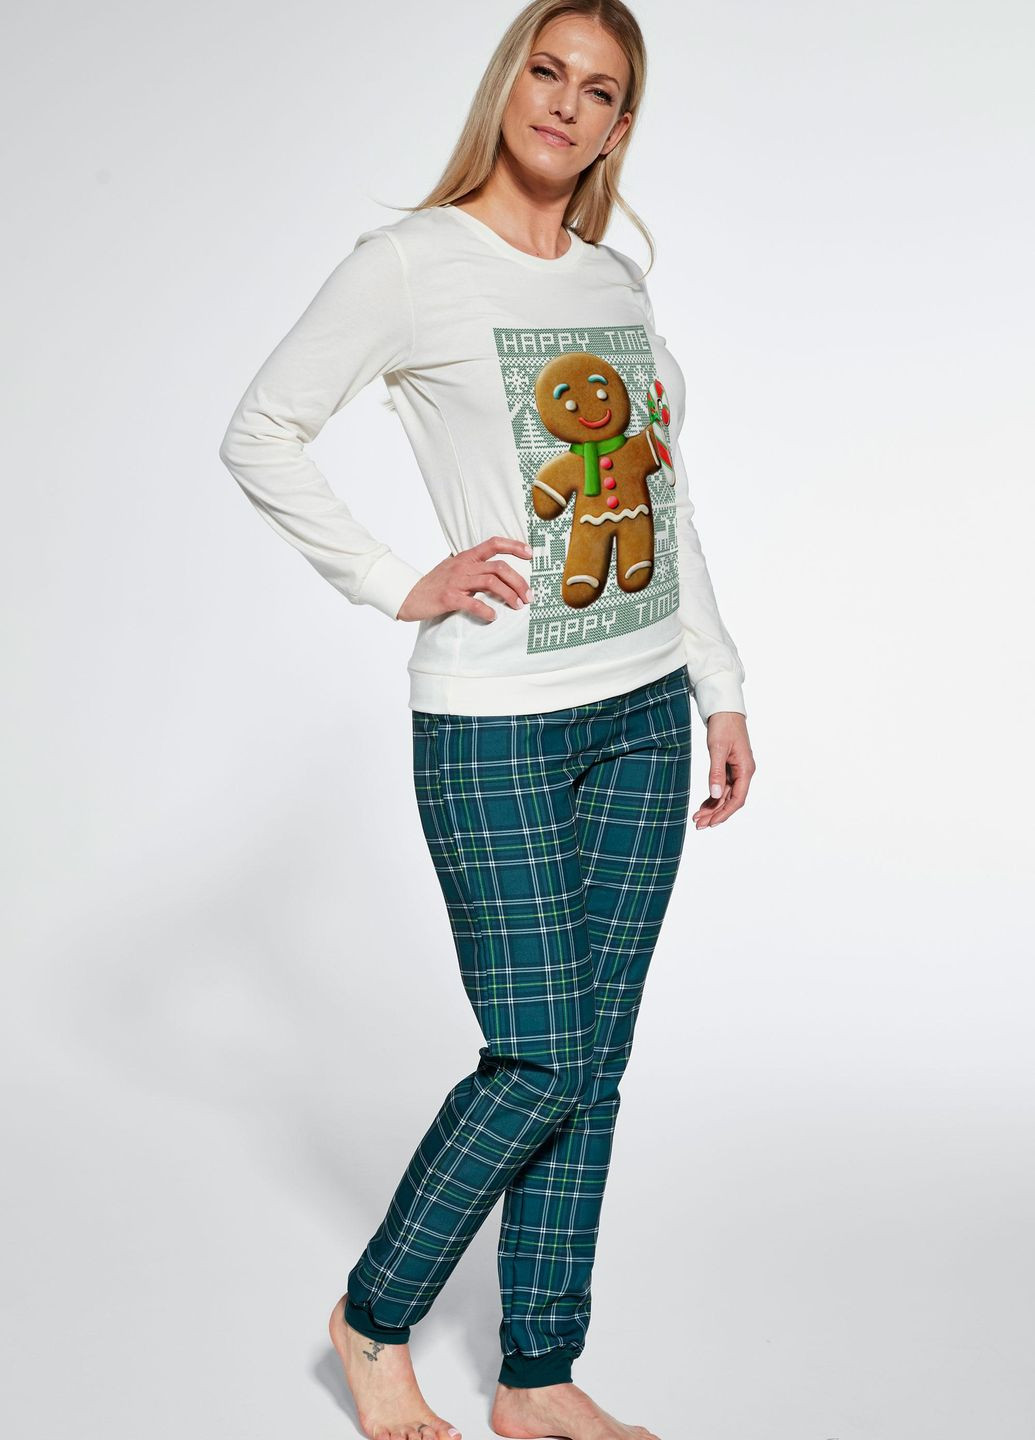 Комбинированная женская пижама 347 cookie 671-23 футболка + брюки Cornette